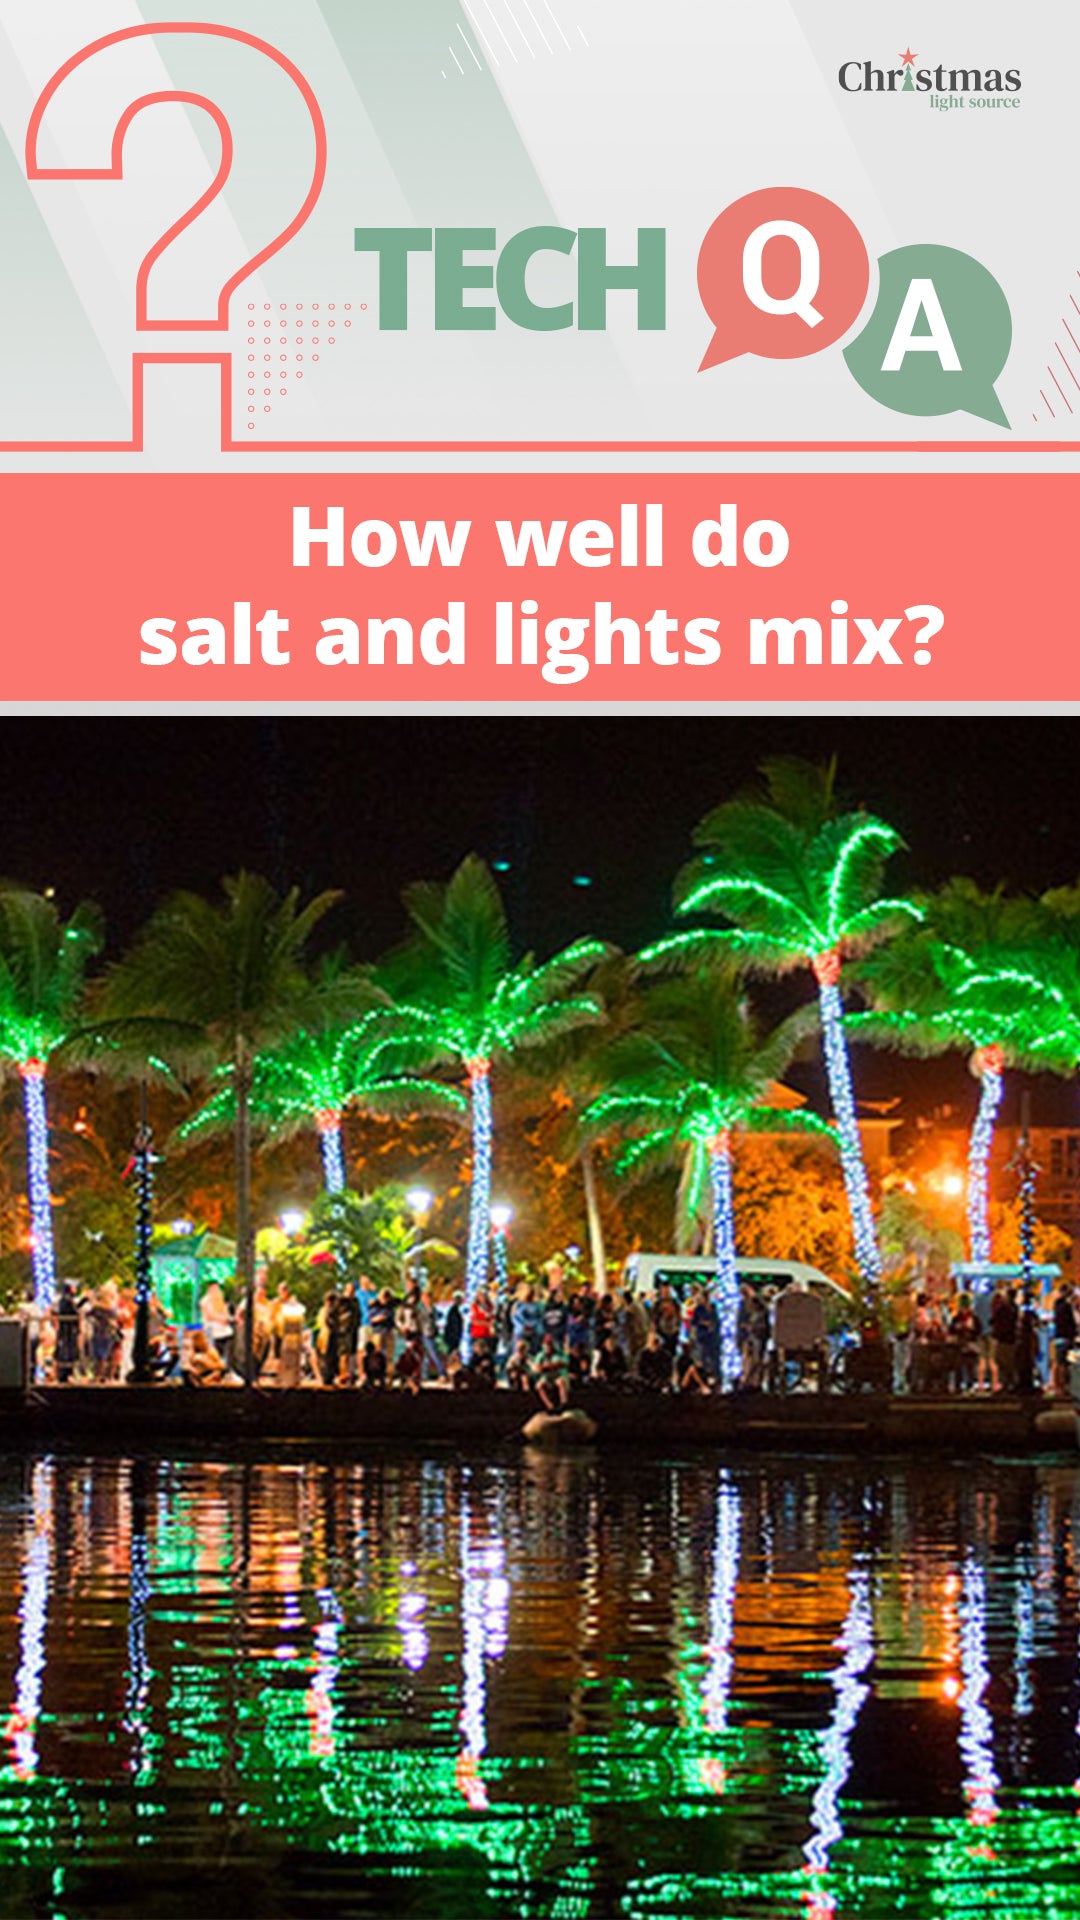 How well do salt and lights mix?